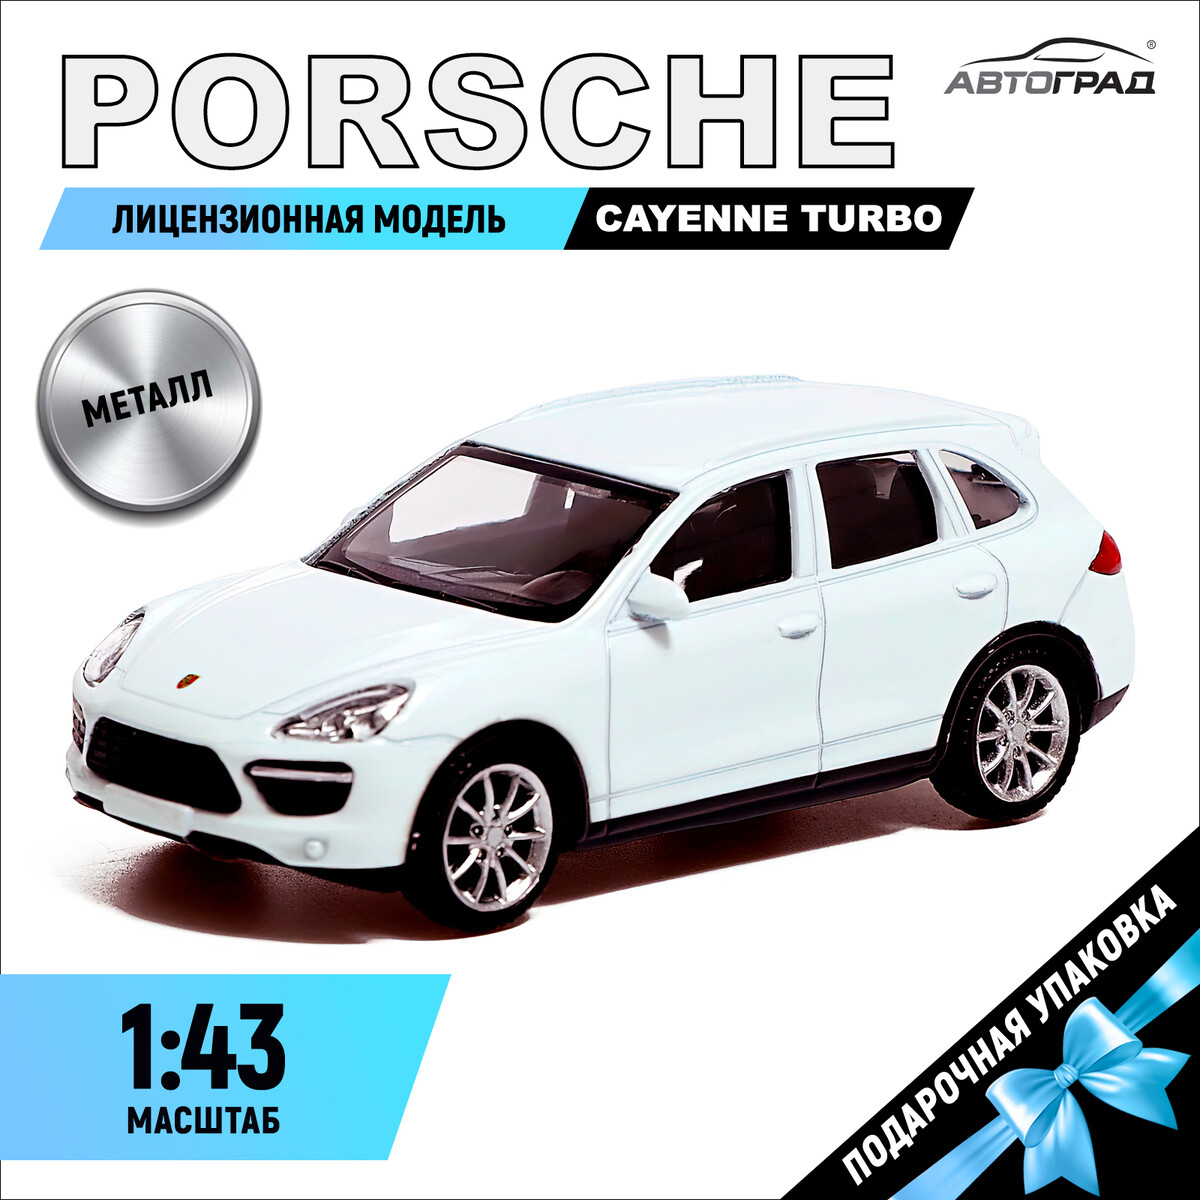 Машина металлическая porsche cayenne turbo, 1:43, цвет белый обогреватель ballu camino eco turbo bec emt 1000 конвекторный 1000 вт до 15 м2 белый